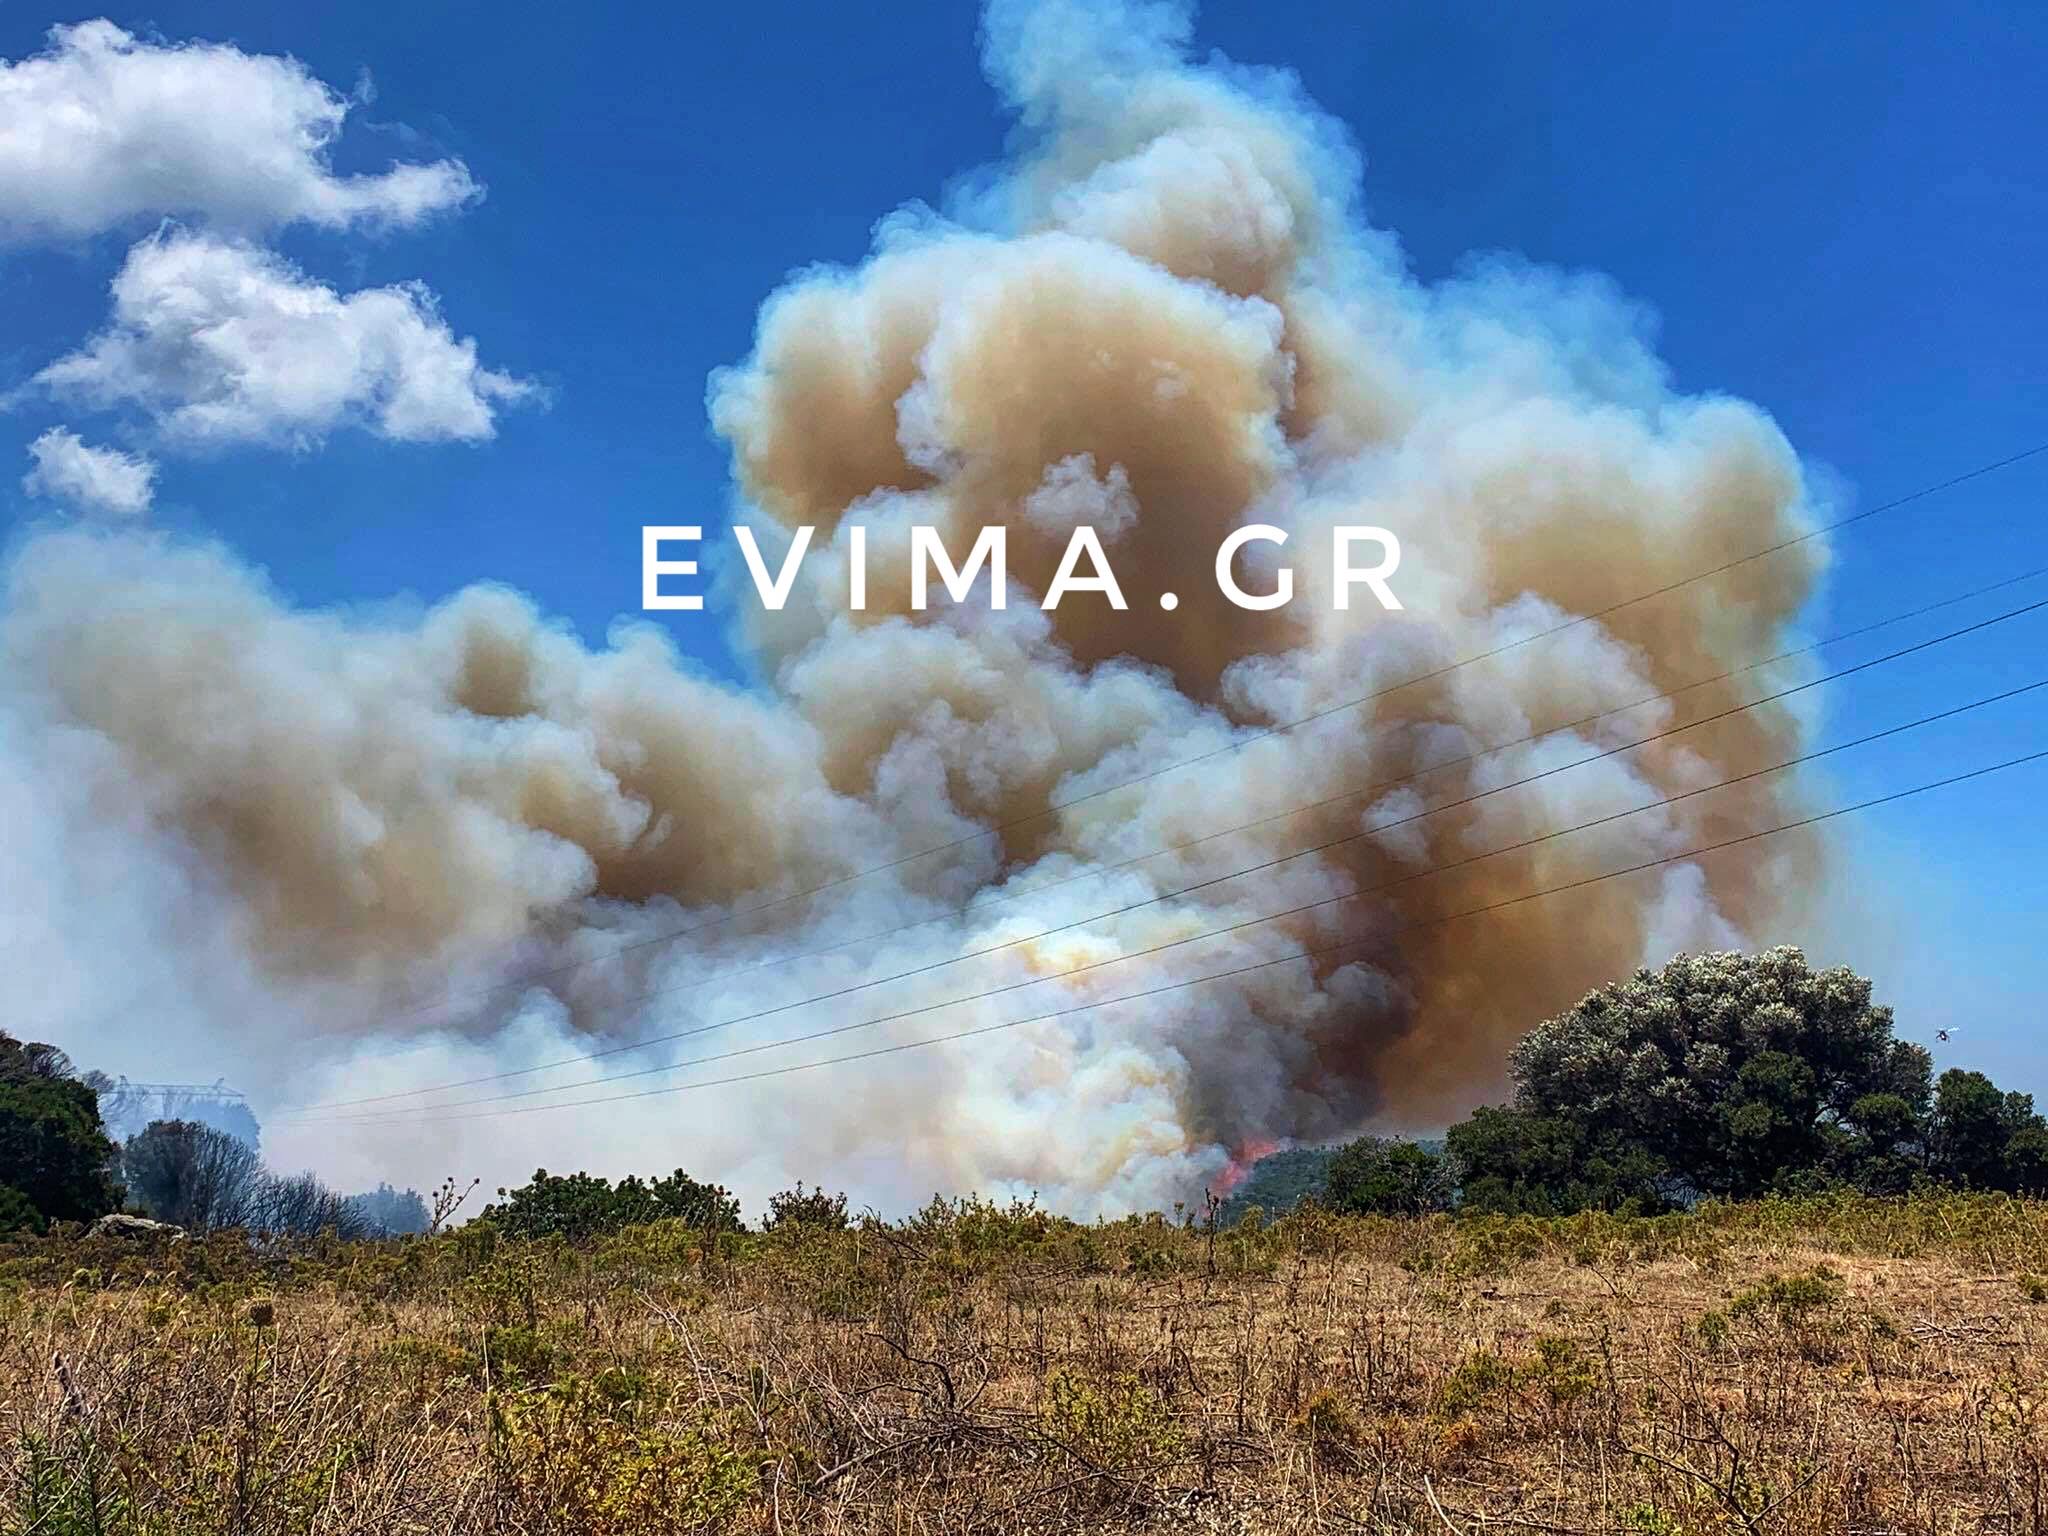 Ο Δήμαρχος Καρύστου στο evima για τη φωτιά -Επιβεβαίωσε την επικοινωνία του με τον υπ. Εσωτερικών για τη φωτιά στους Ραπταίους